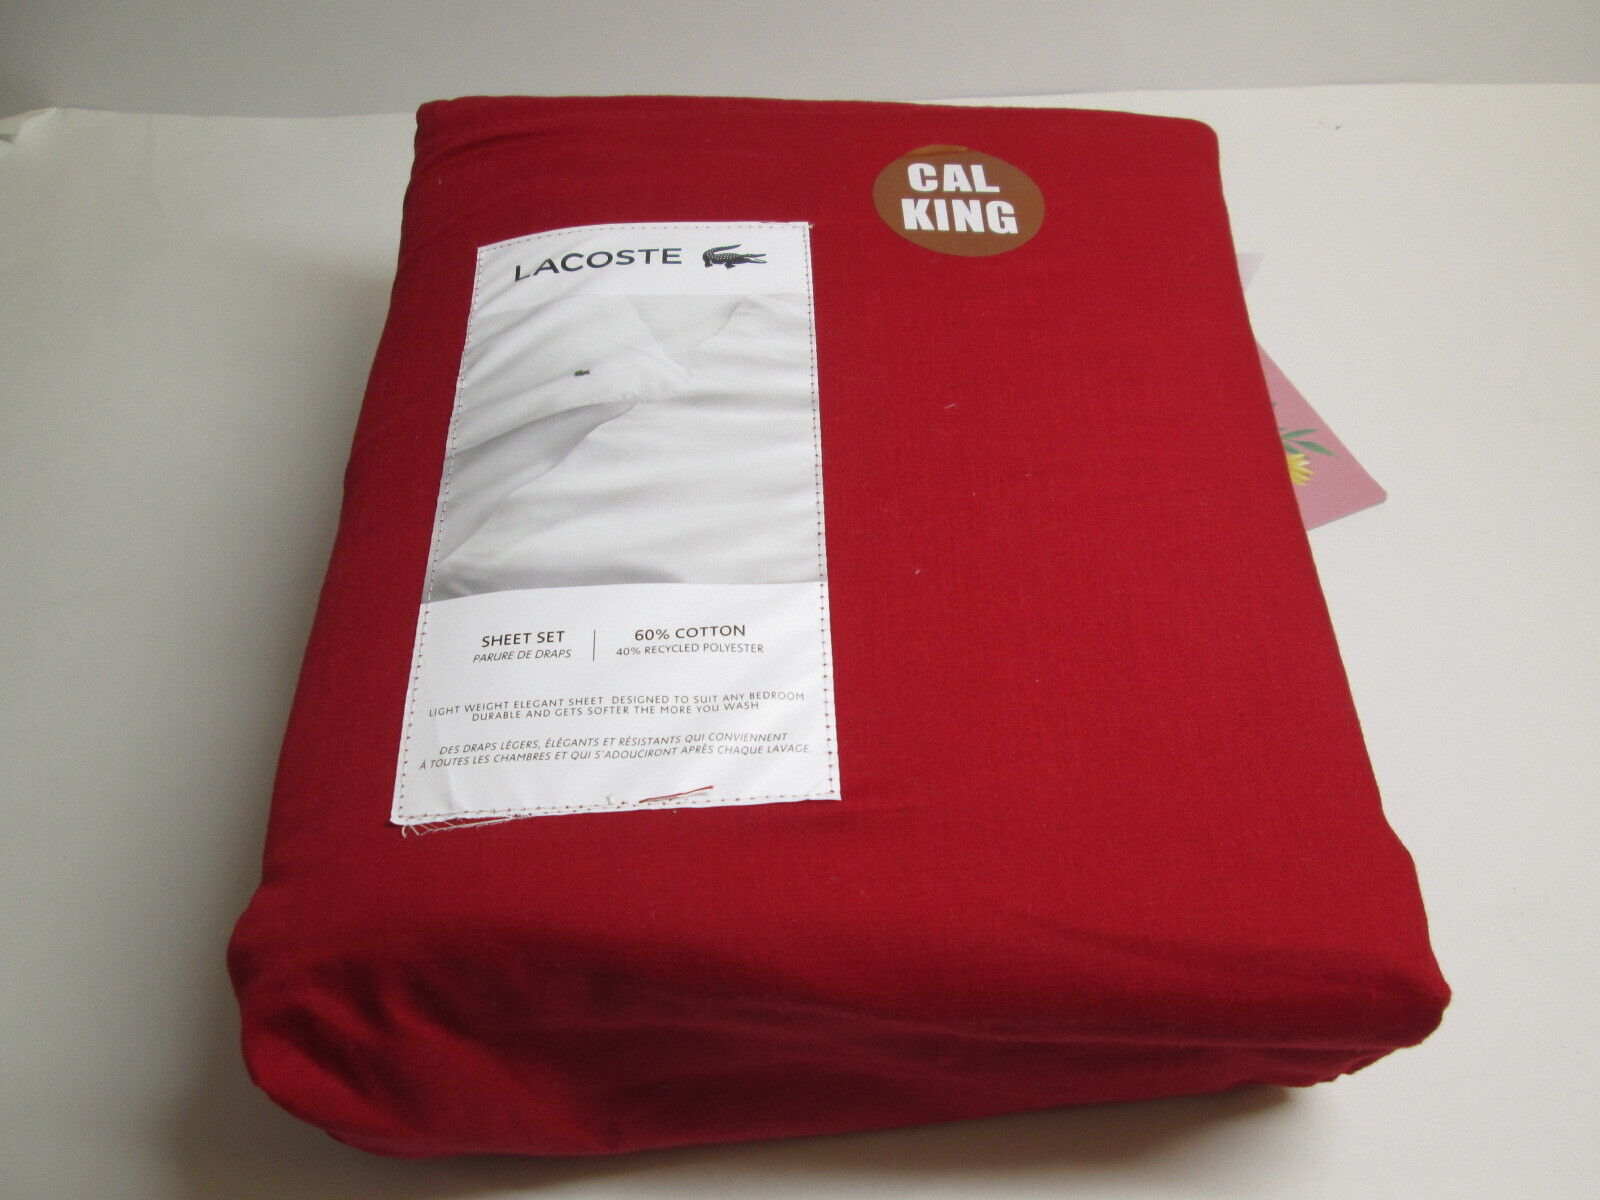 NEW Light Weight Elegant King Sheet Set ~ Red Chili Pepper New | eBay